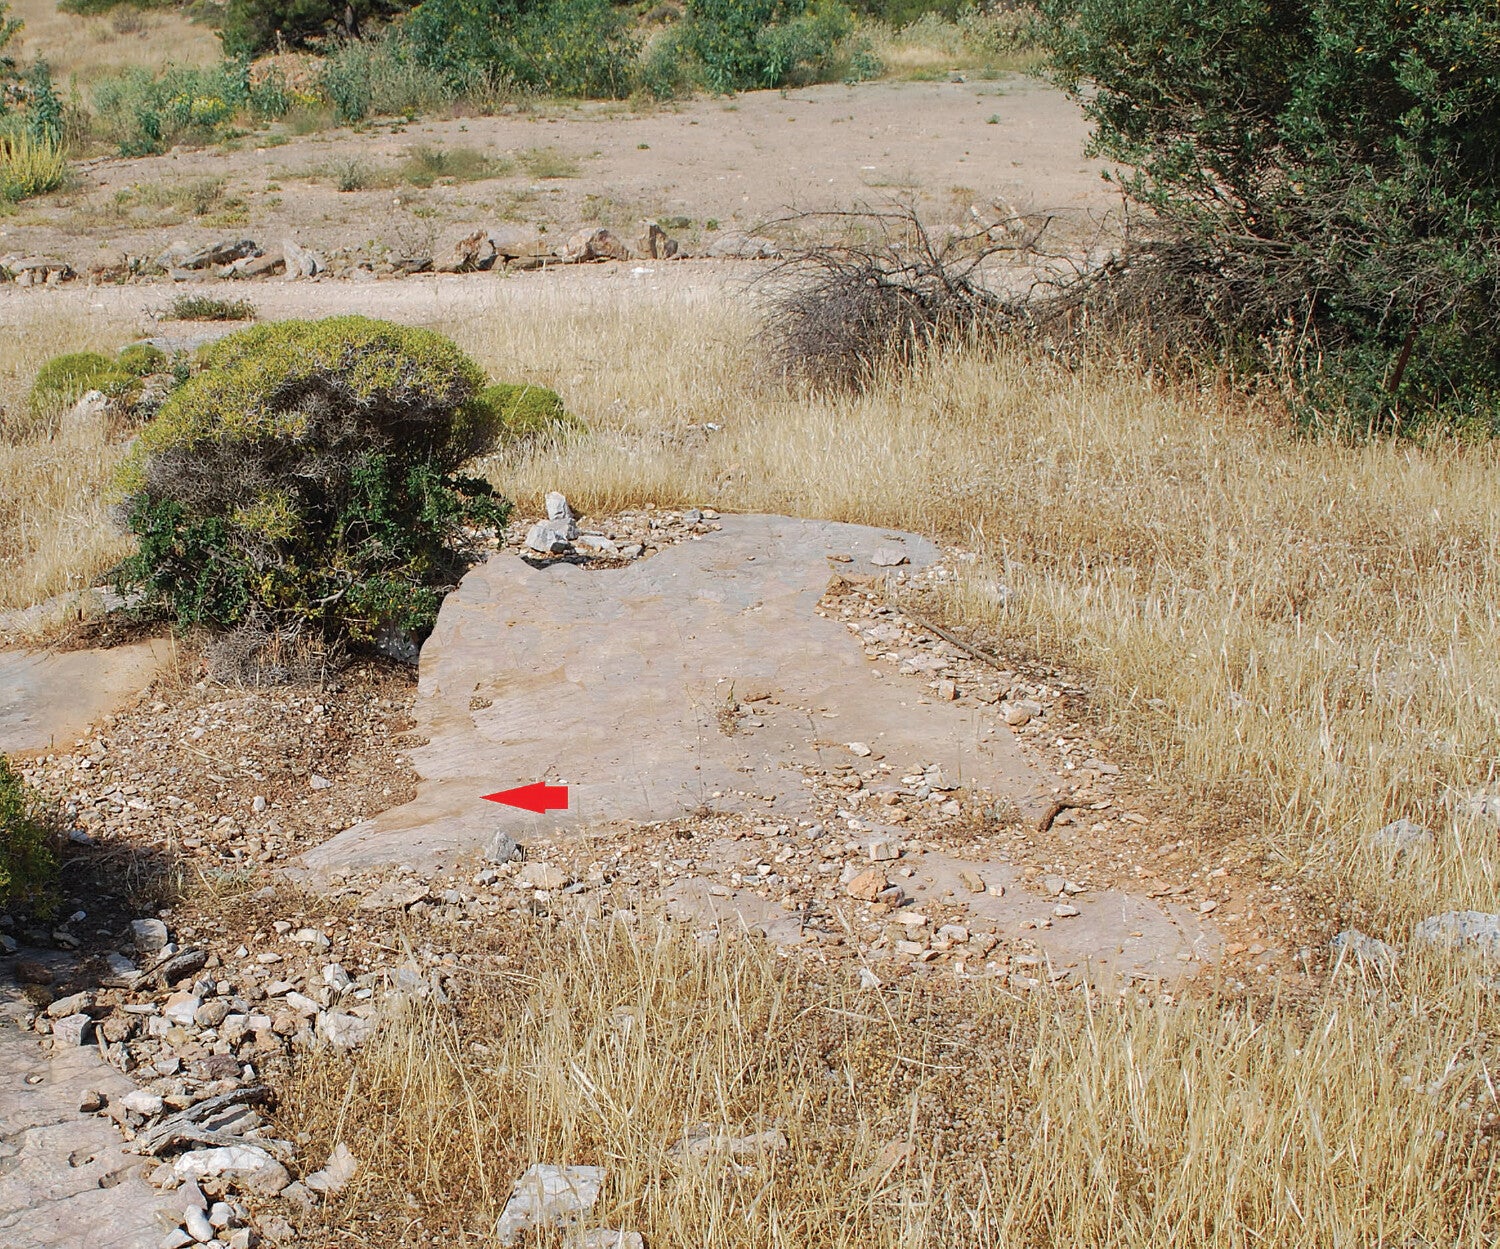 Área de roca firme donde se halló el grafiti (como indica la flecha): atrás puede verse un camino de tierra